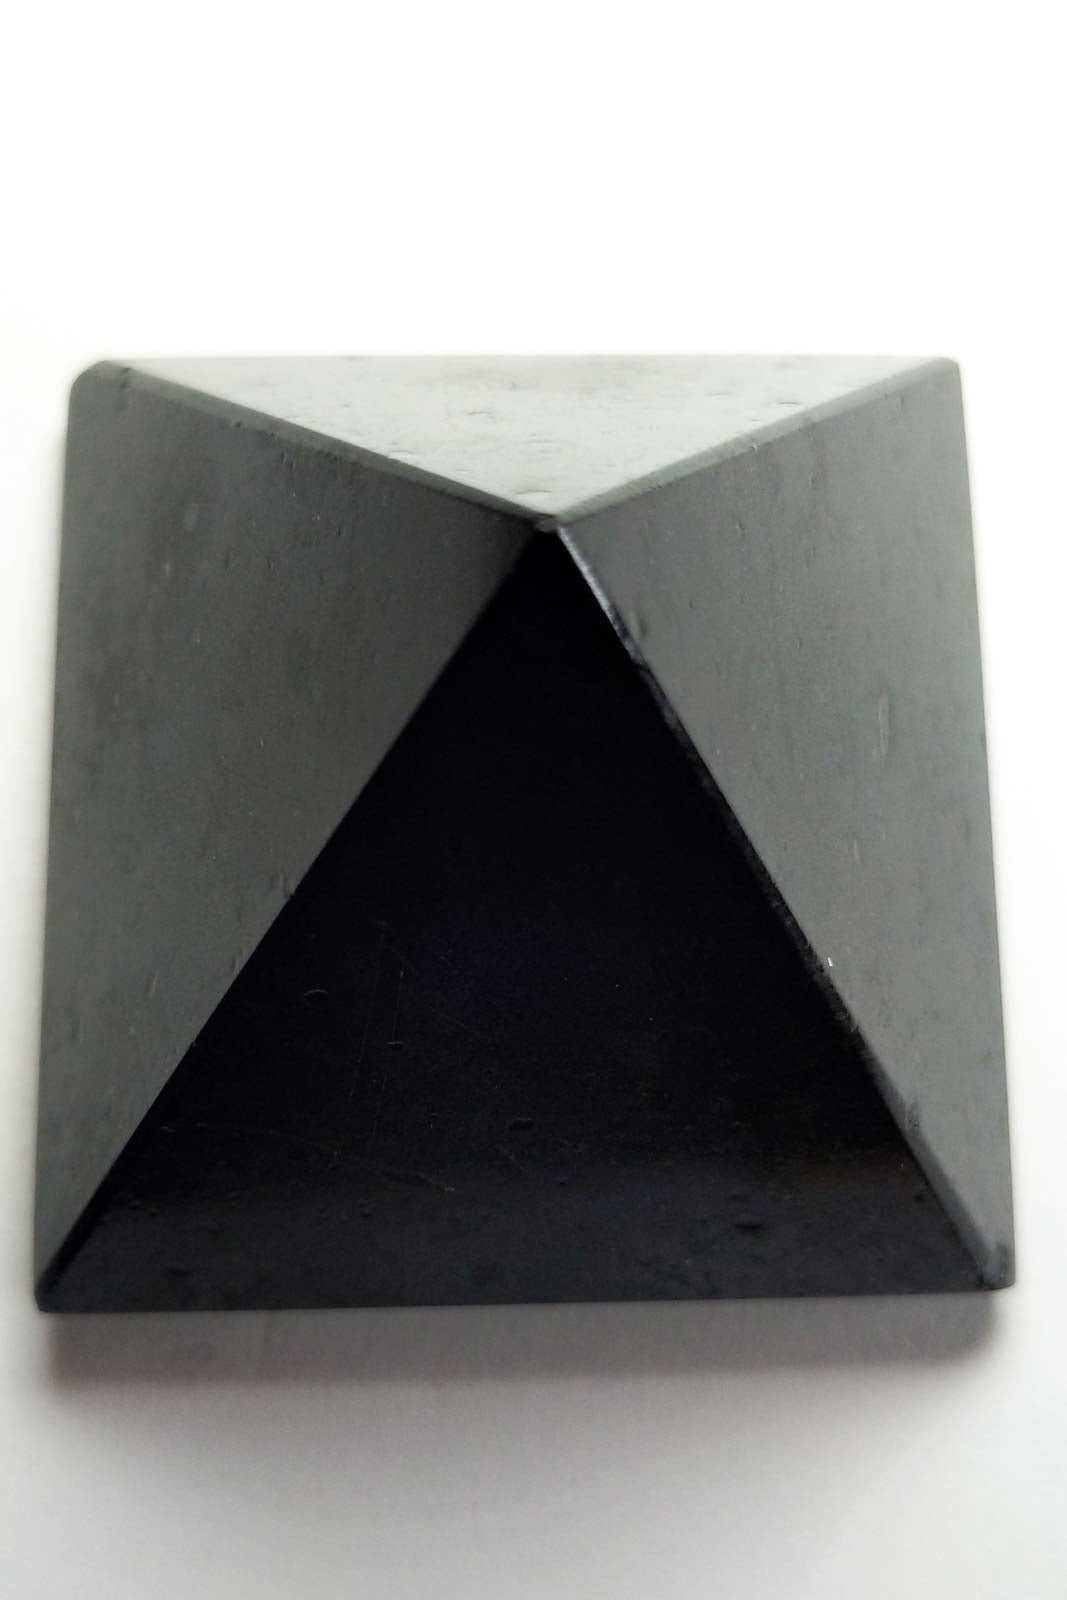 ブラックトルマリン クリスタル ピラミッド